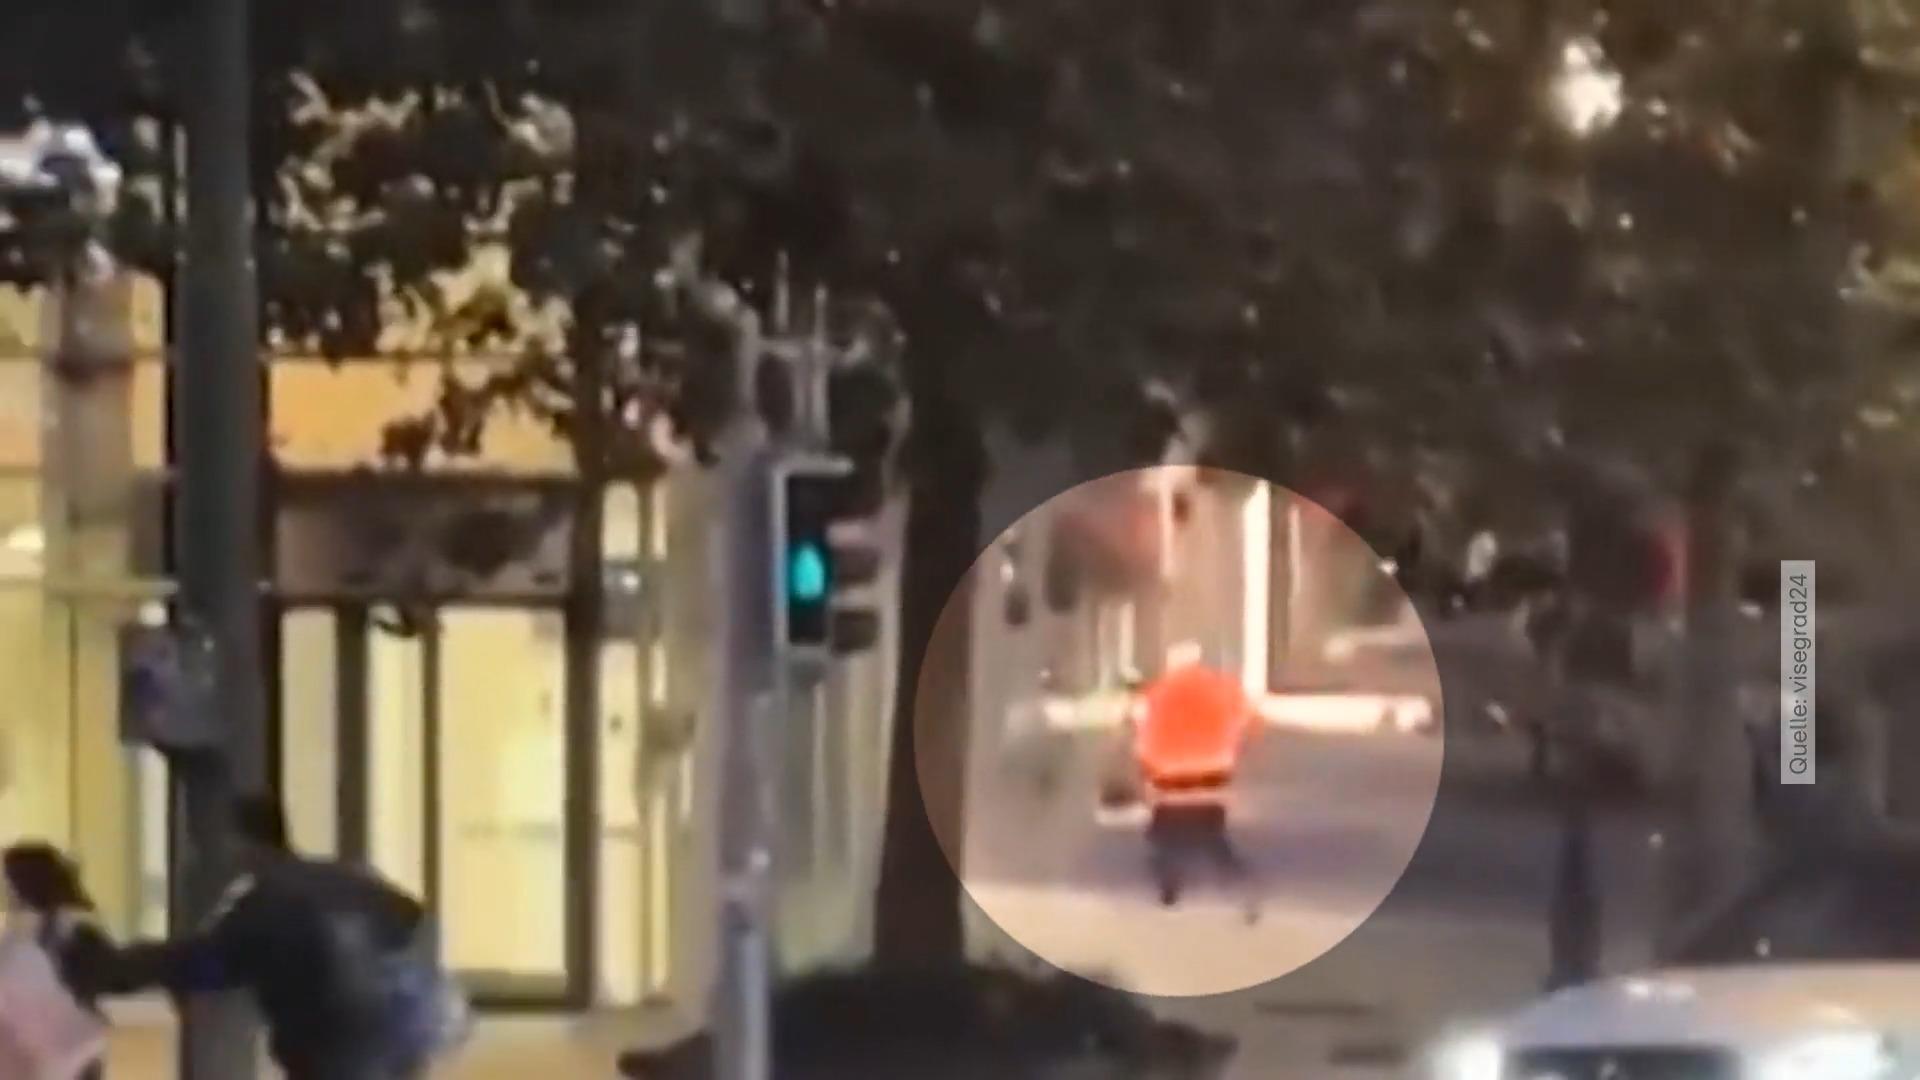 Augenzeuge filmt Bluttat in Brüssel - Angreifer getötet Schießerei am Morgen nach Attentat